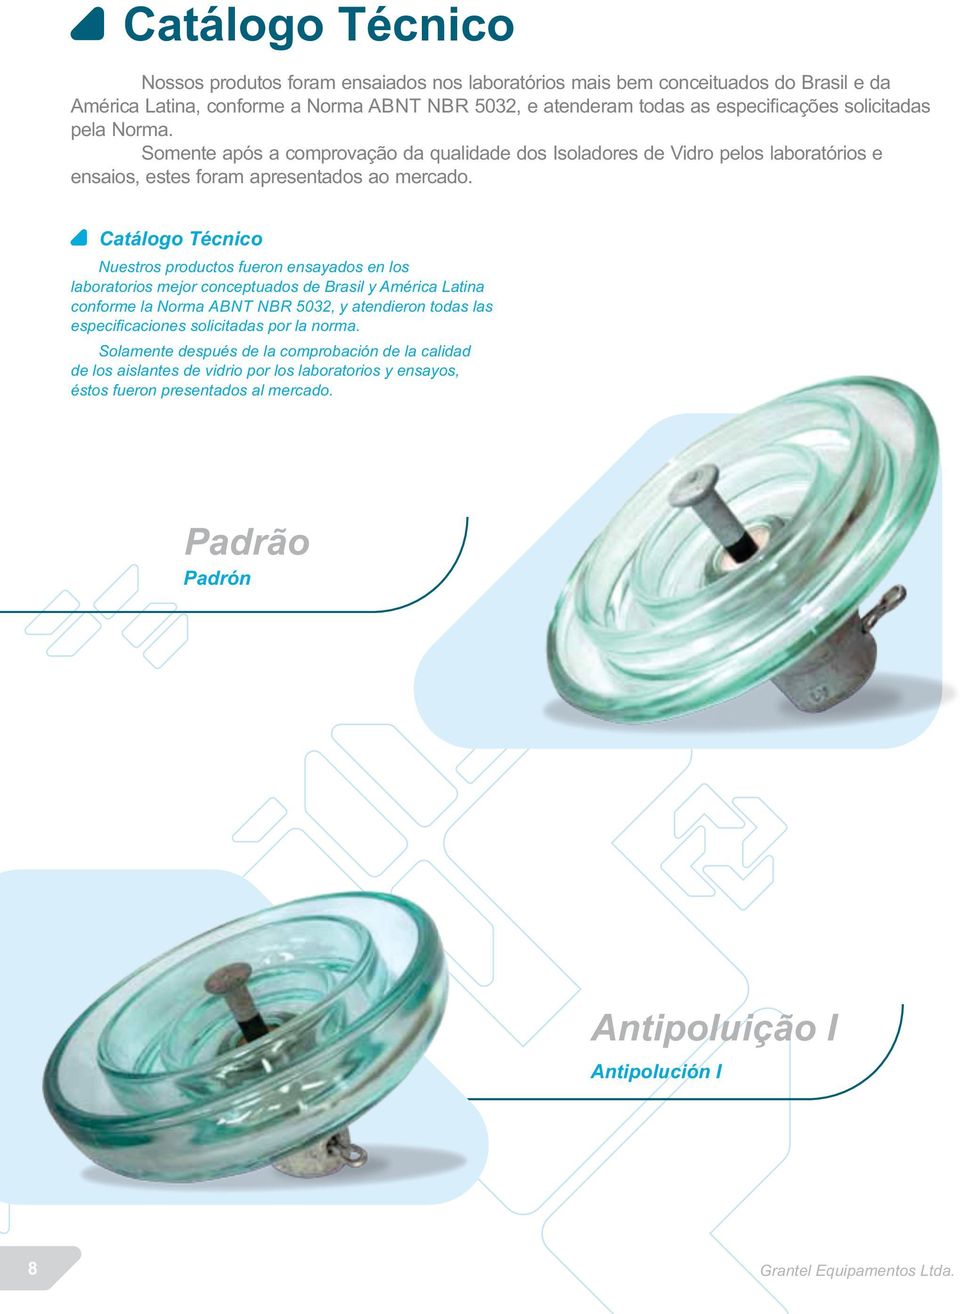 Catálogo Técnico Nuestros productos fueron ensayados en los laboratorios mejor conceptuados de Brasil y América Latina conforme la Norma ABNT NBR 5032, y atendieron todas las